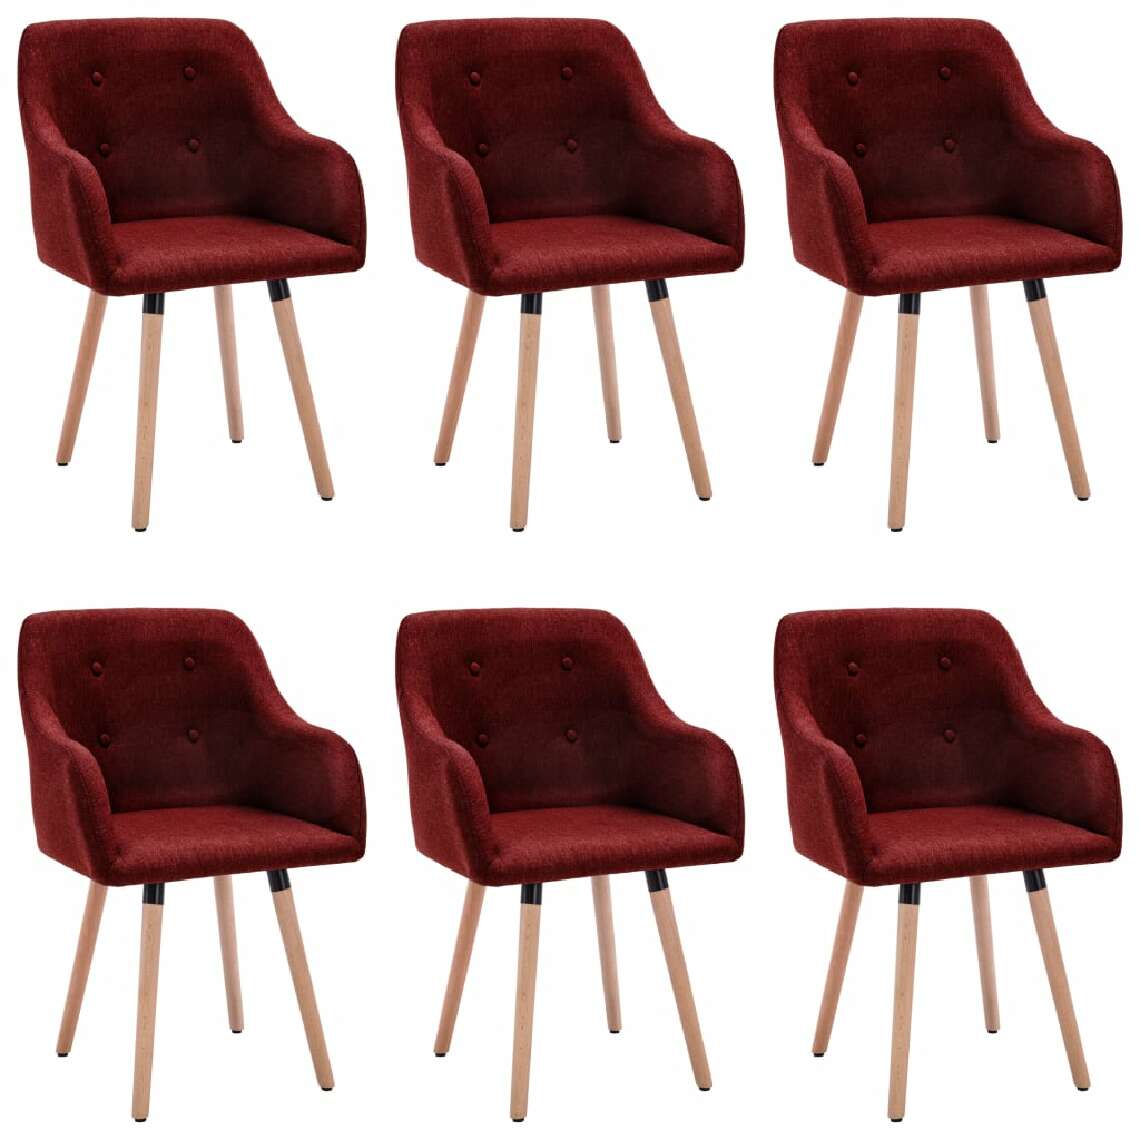 Chunhelife - Chunhelife Chaises de salle à manger 6 pcs Rouge bordeaux Tissu - Chaises